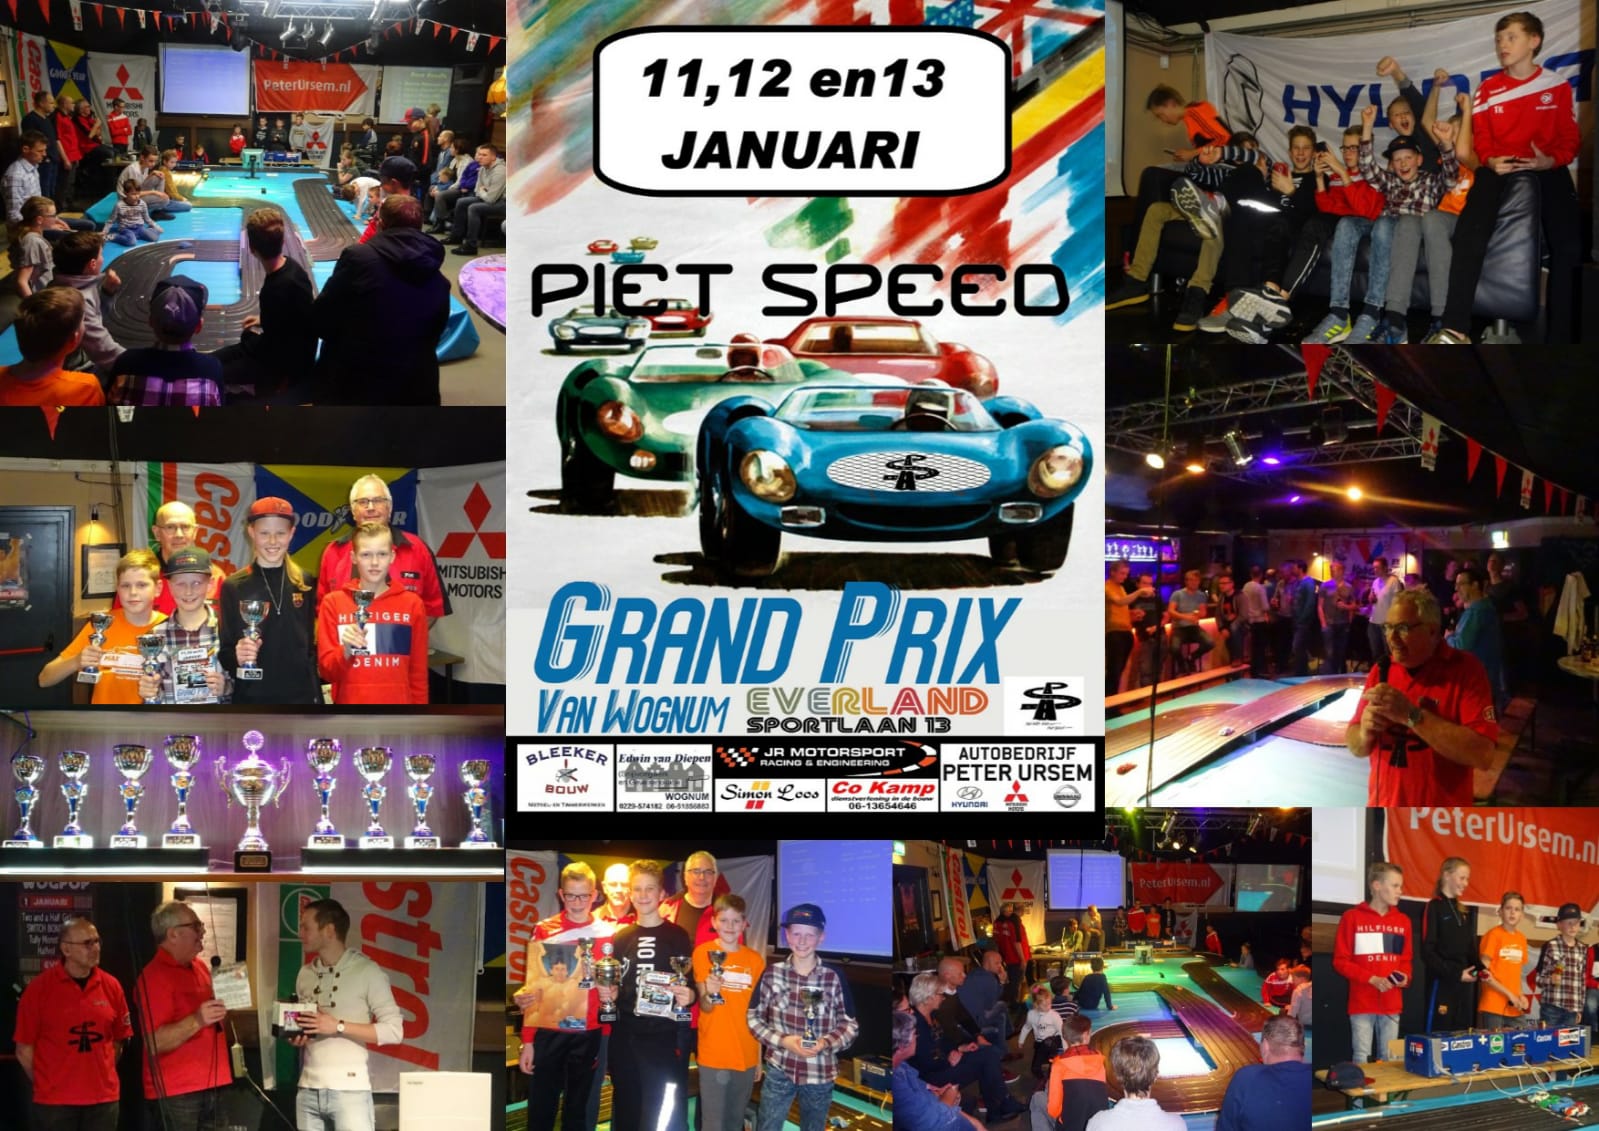 Foto collage van de Grand Prix van Wognum, gemaakt door JC Everland